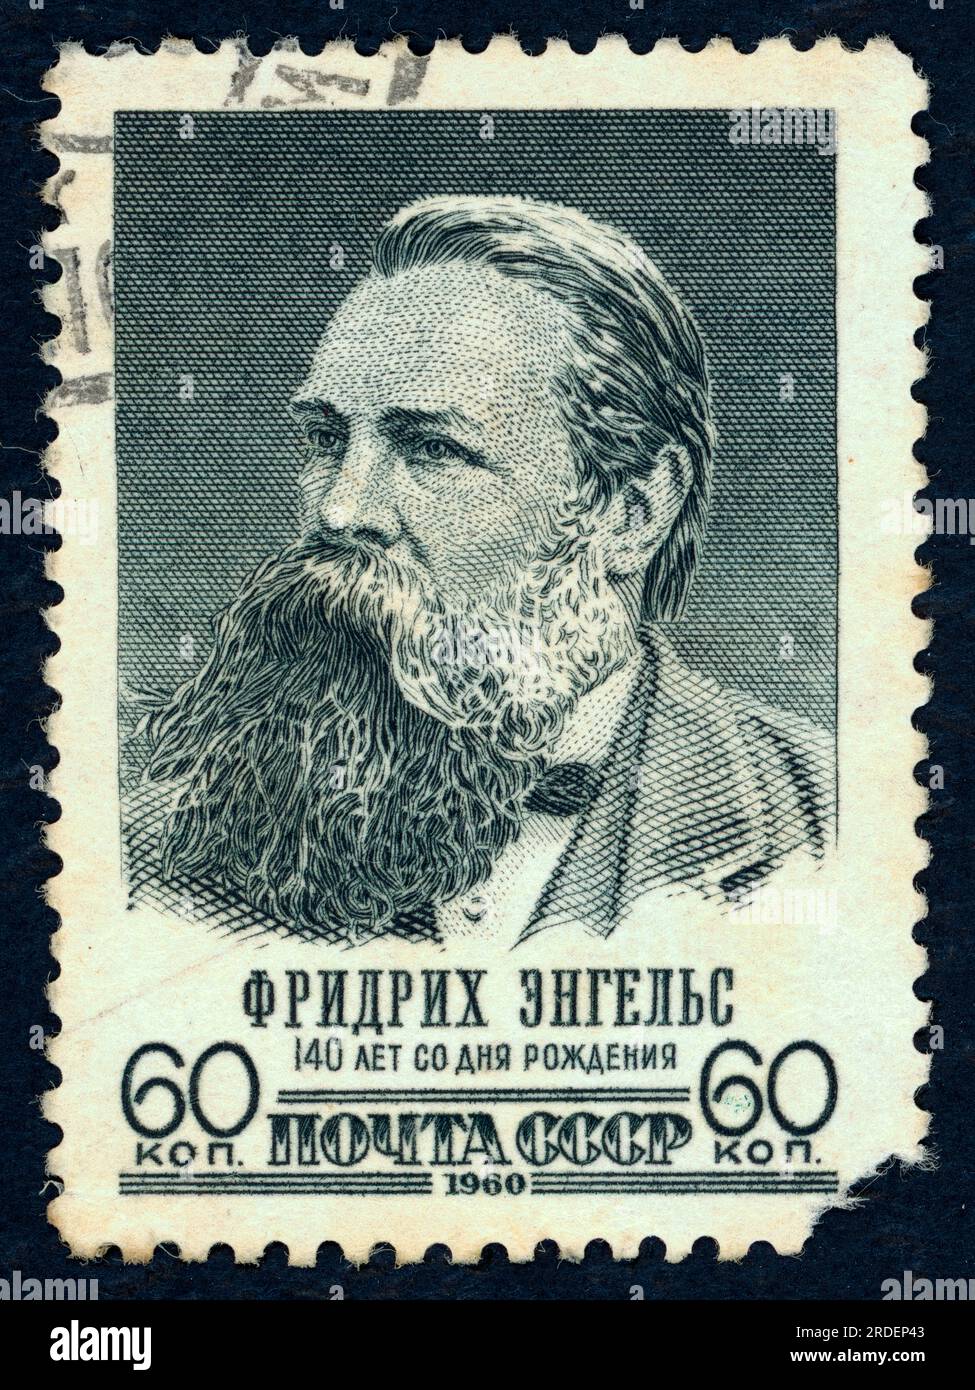 Friedrich Engels - 140 ° anniversario della sua nascita. Francobollo emesso in URSS nel 1960. Valore nominale: 60 kopek. Foto Stock